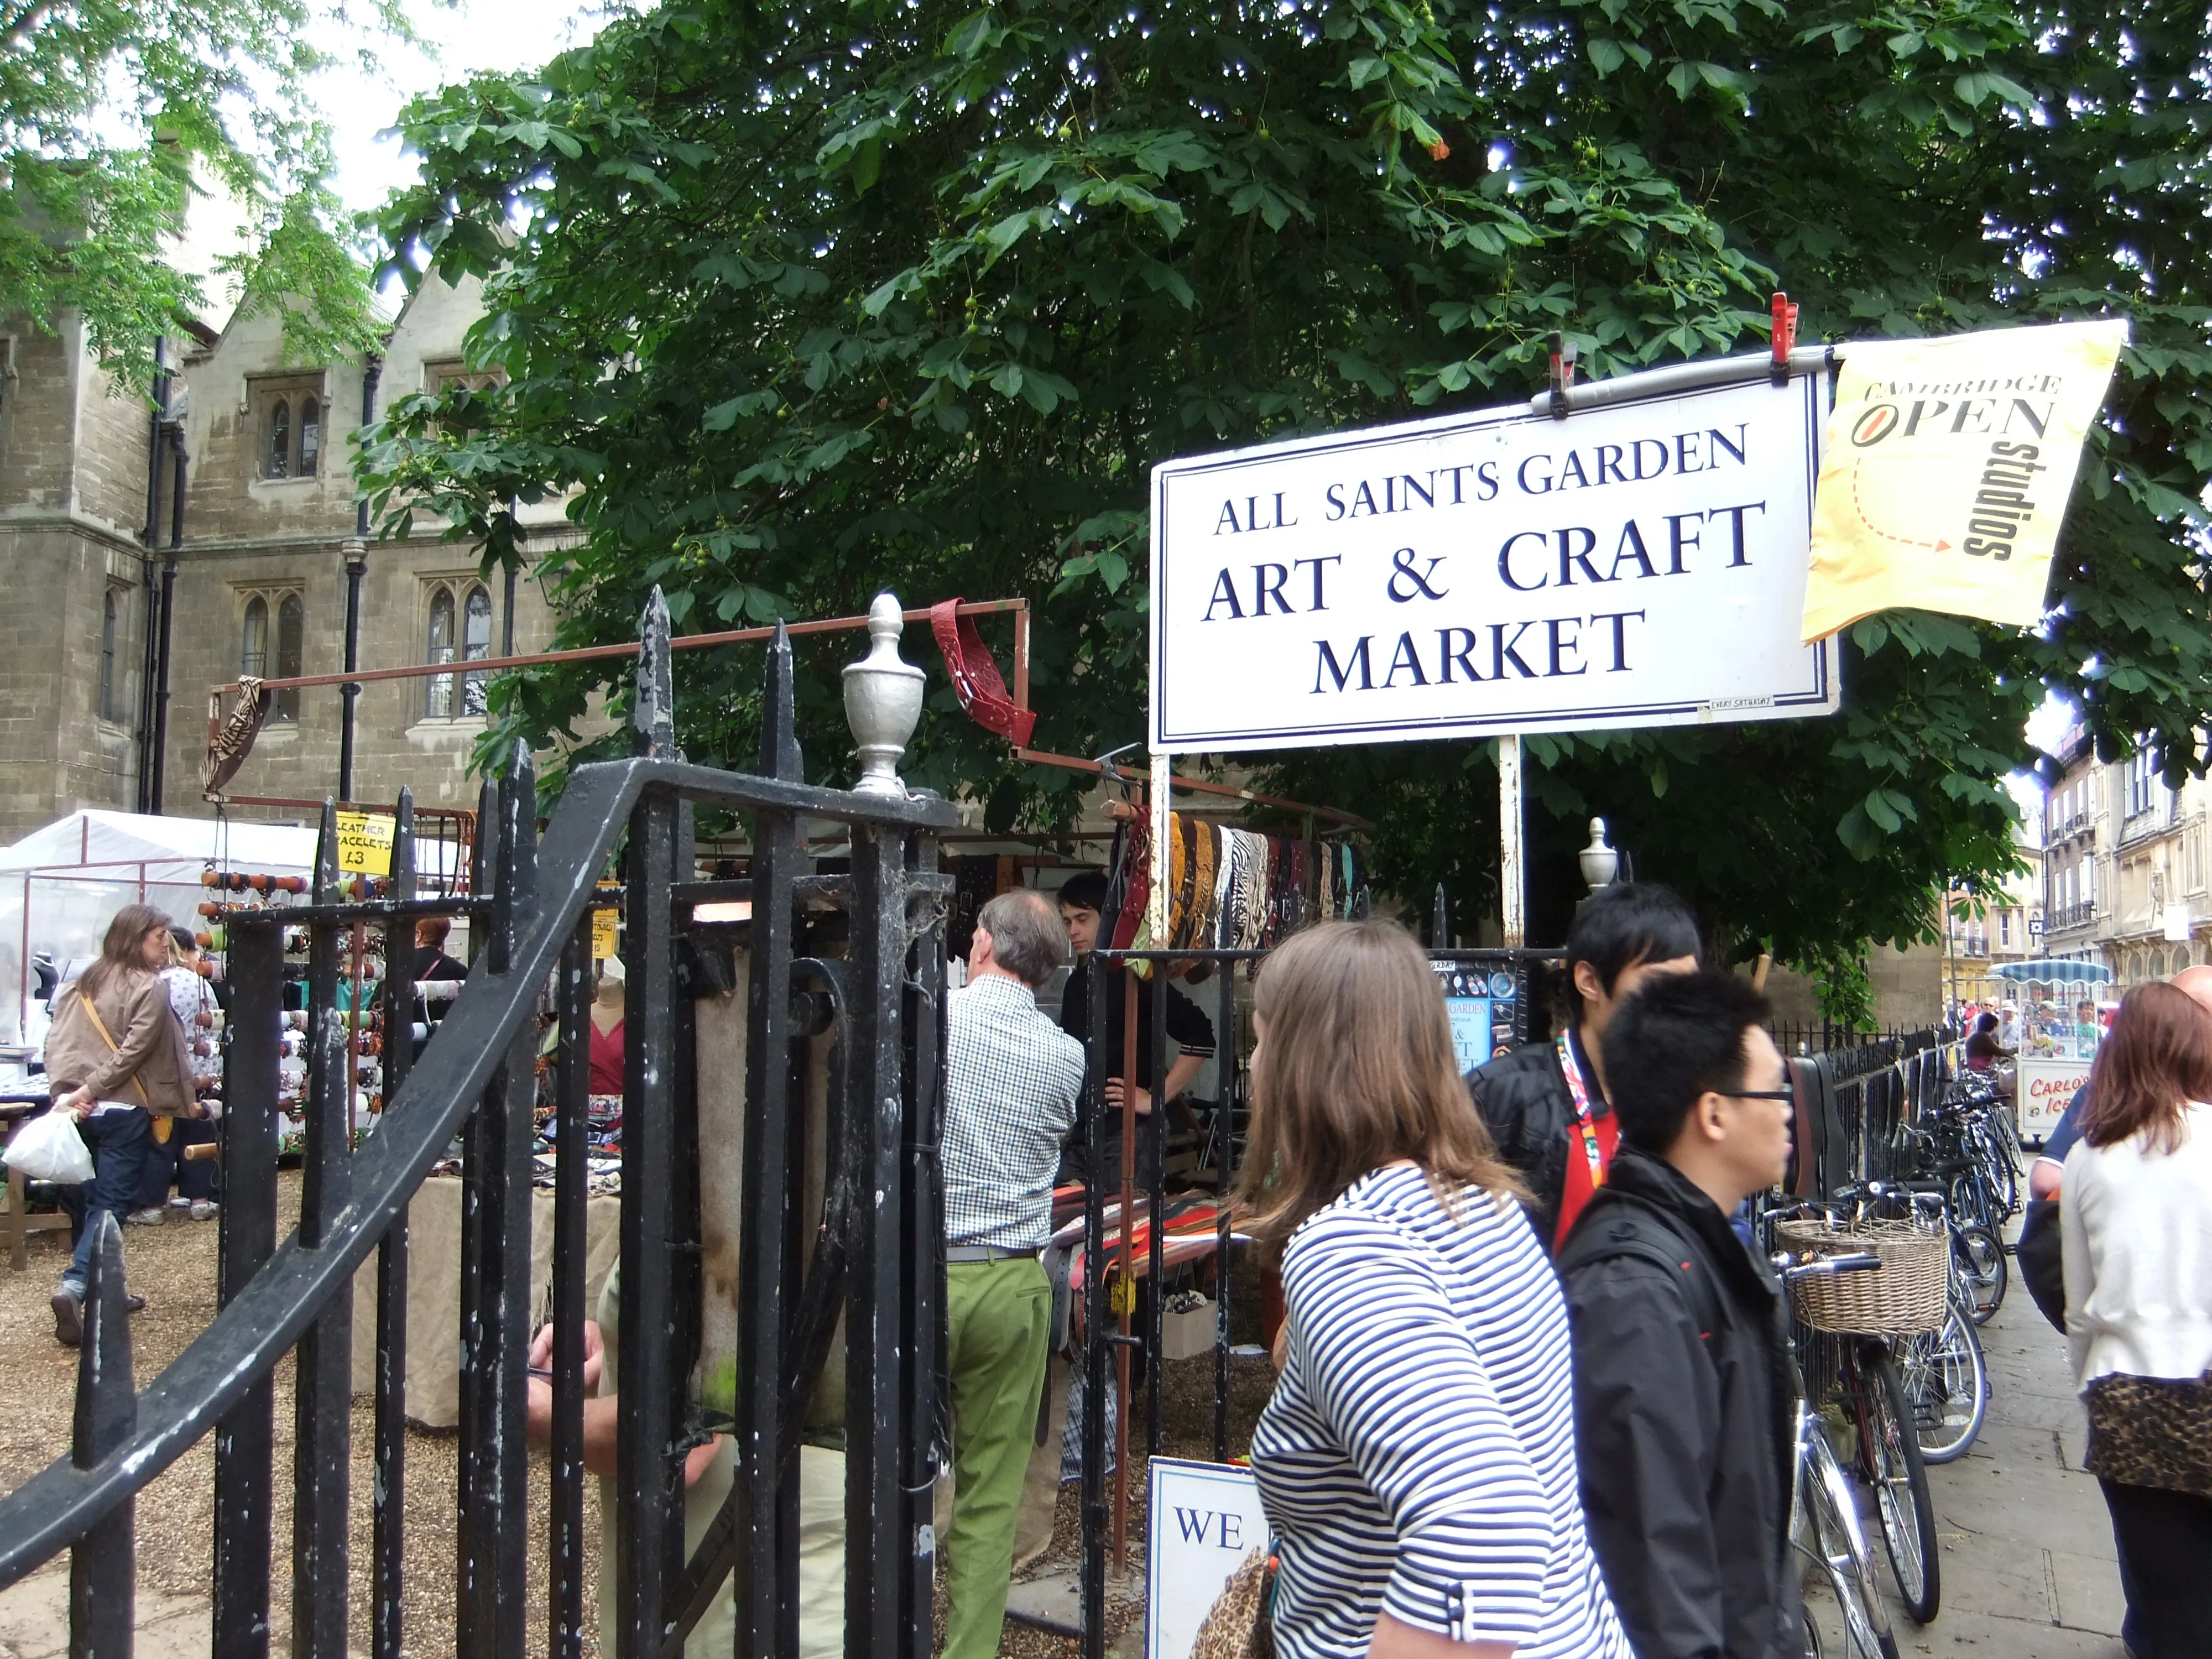 All Saints Garden Art & Craft Market in United Kingdom, europe | Other Crafts,Handicrafts,Art - Country Helper